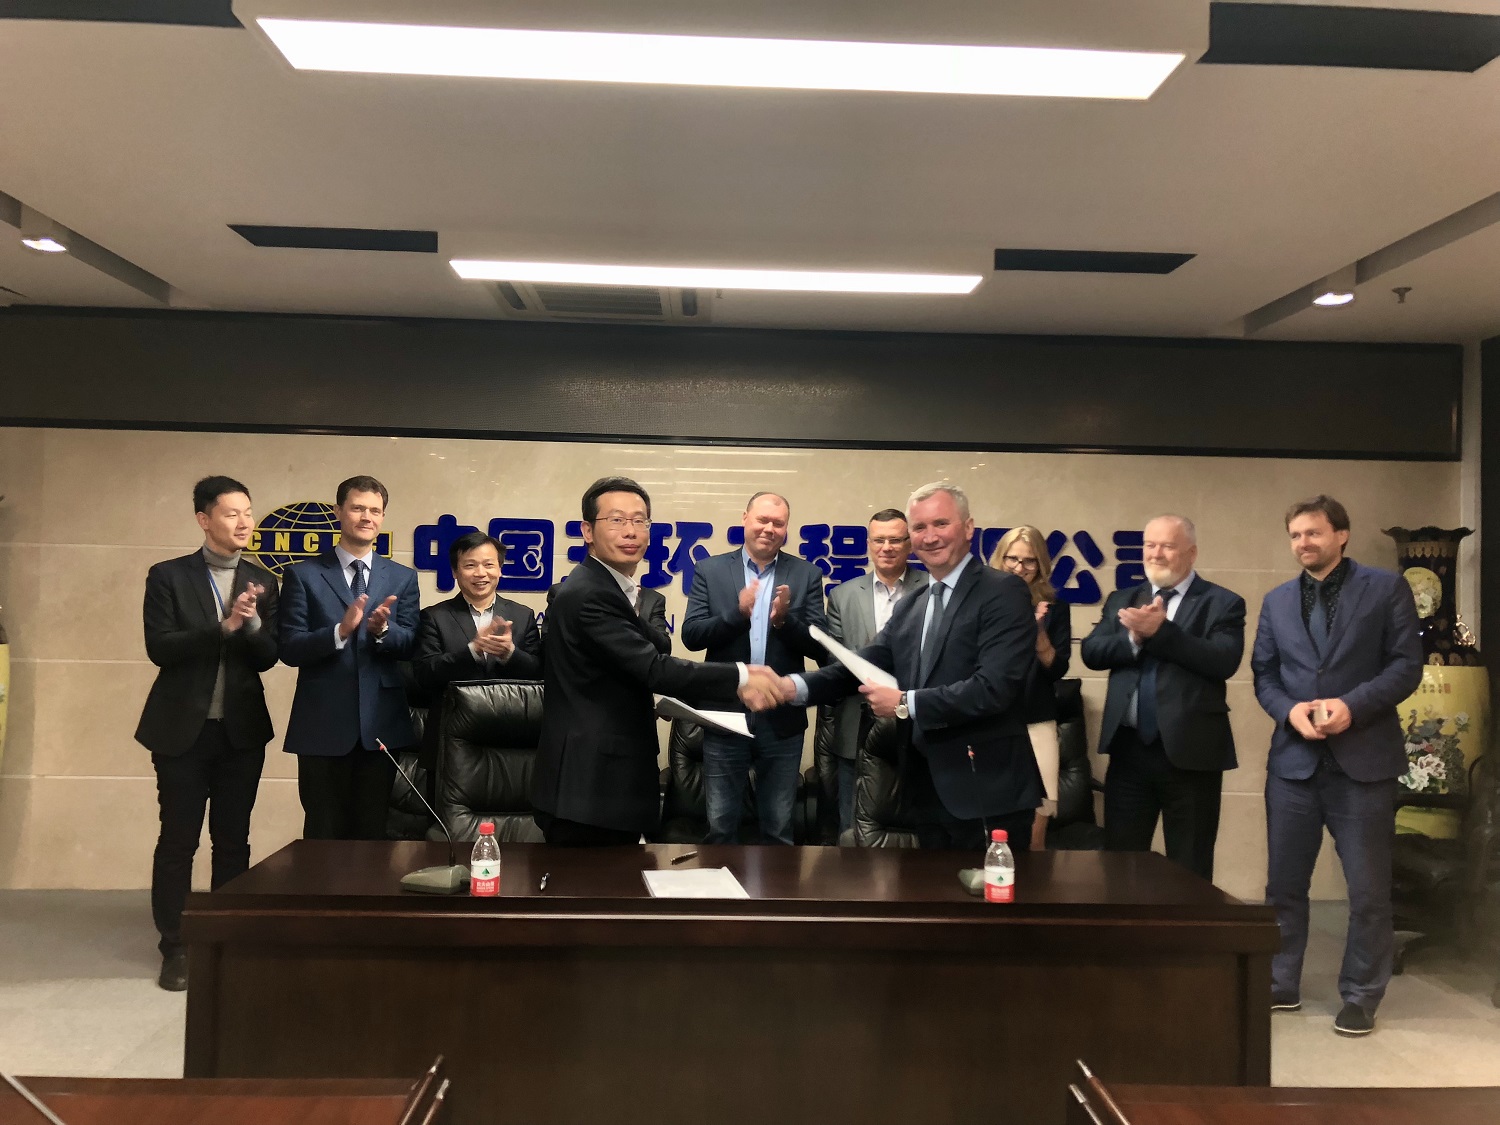 11 апреля НИИК подписал контракт на инжиниринговые работы с китайской компанией CNCEC по проекту аммиачно-карбамидного комплекса для ОАО «Щекиноазот»